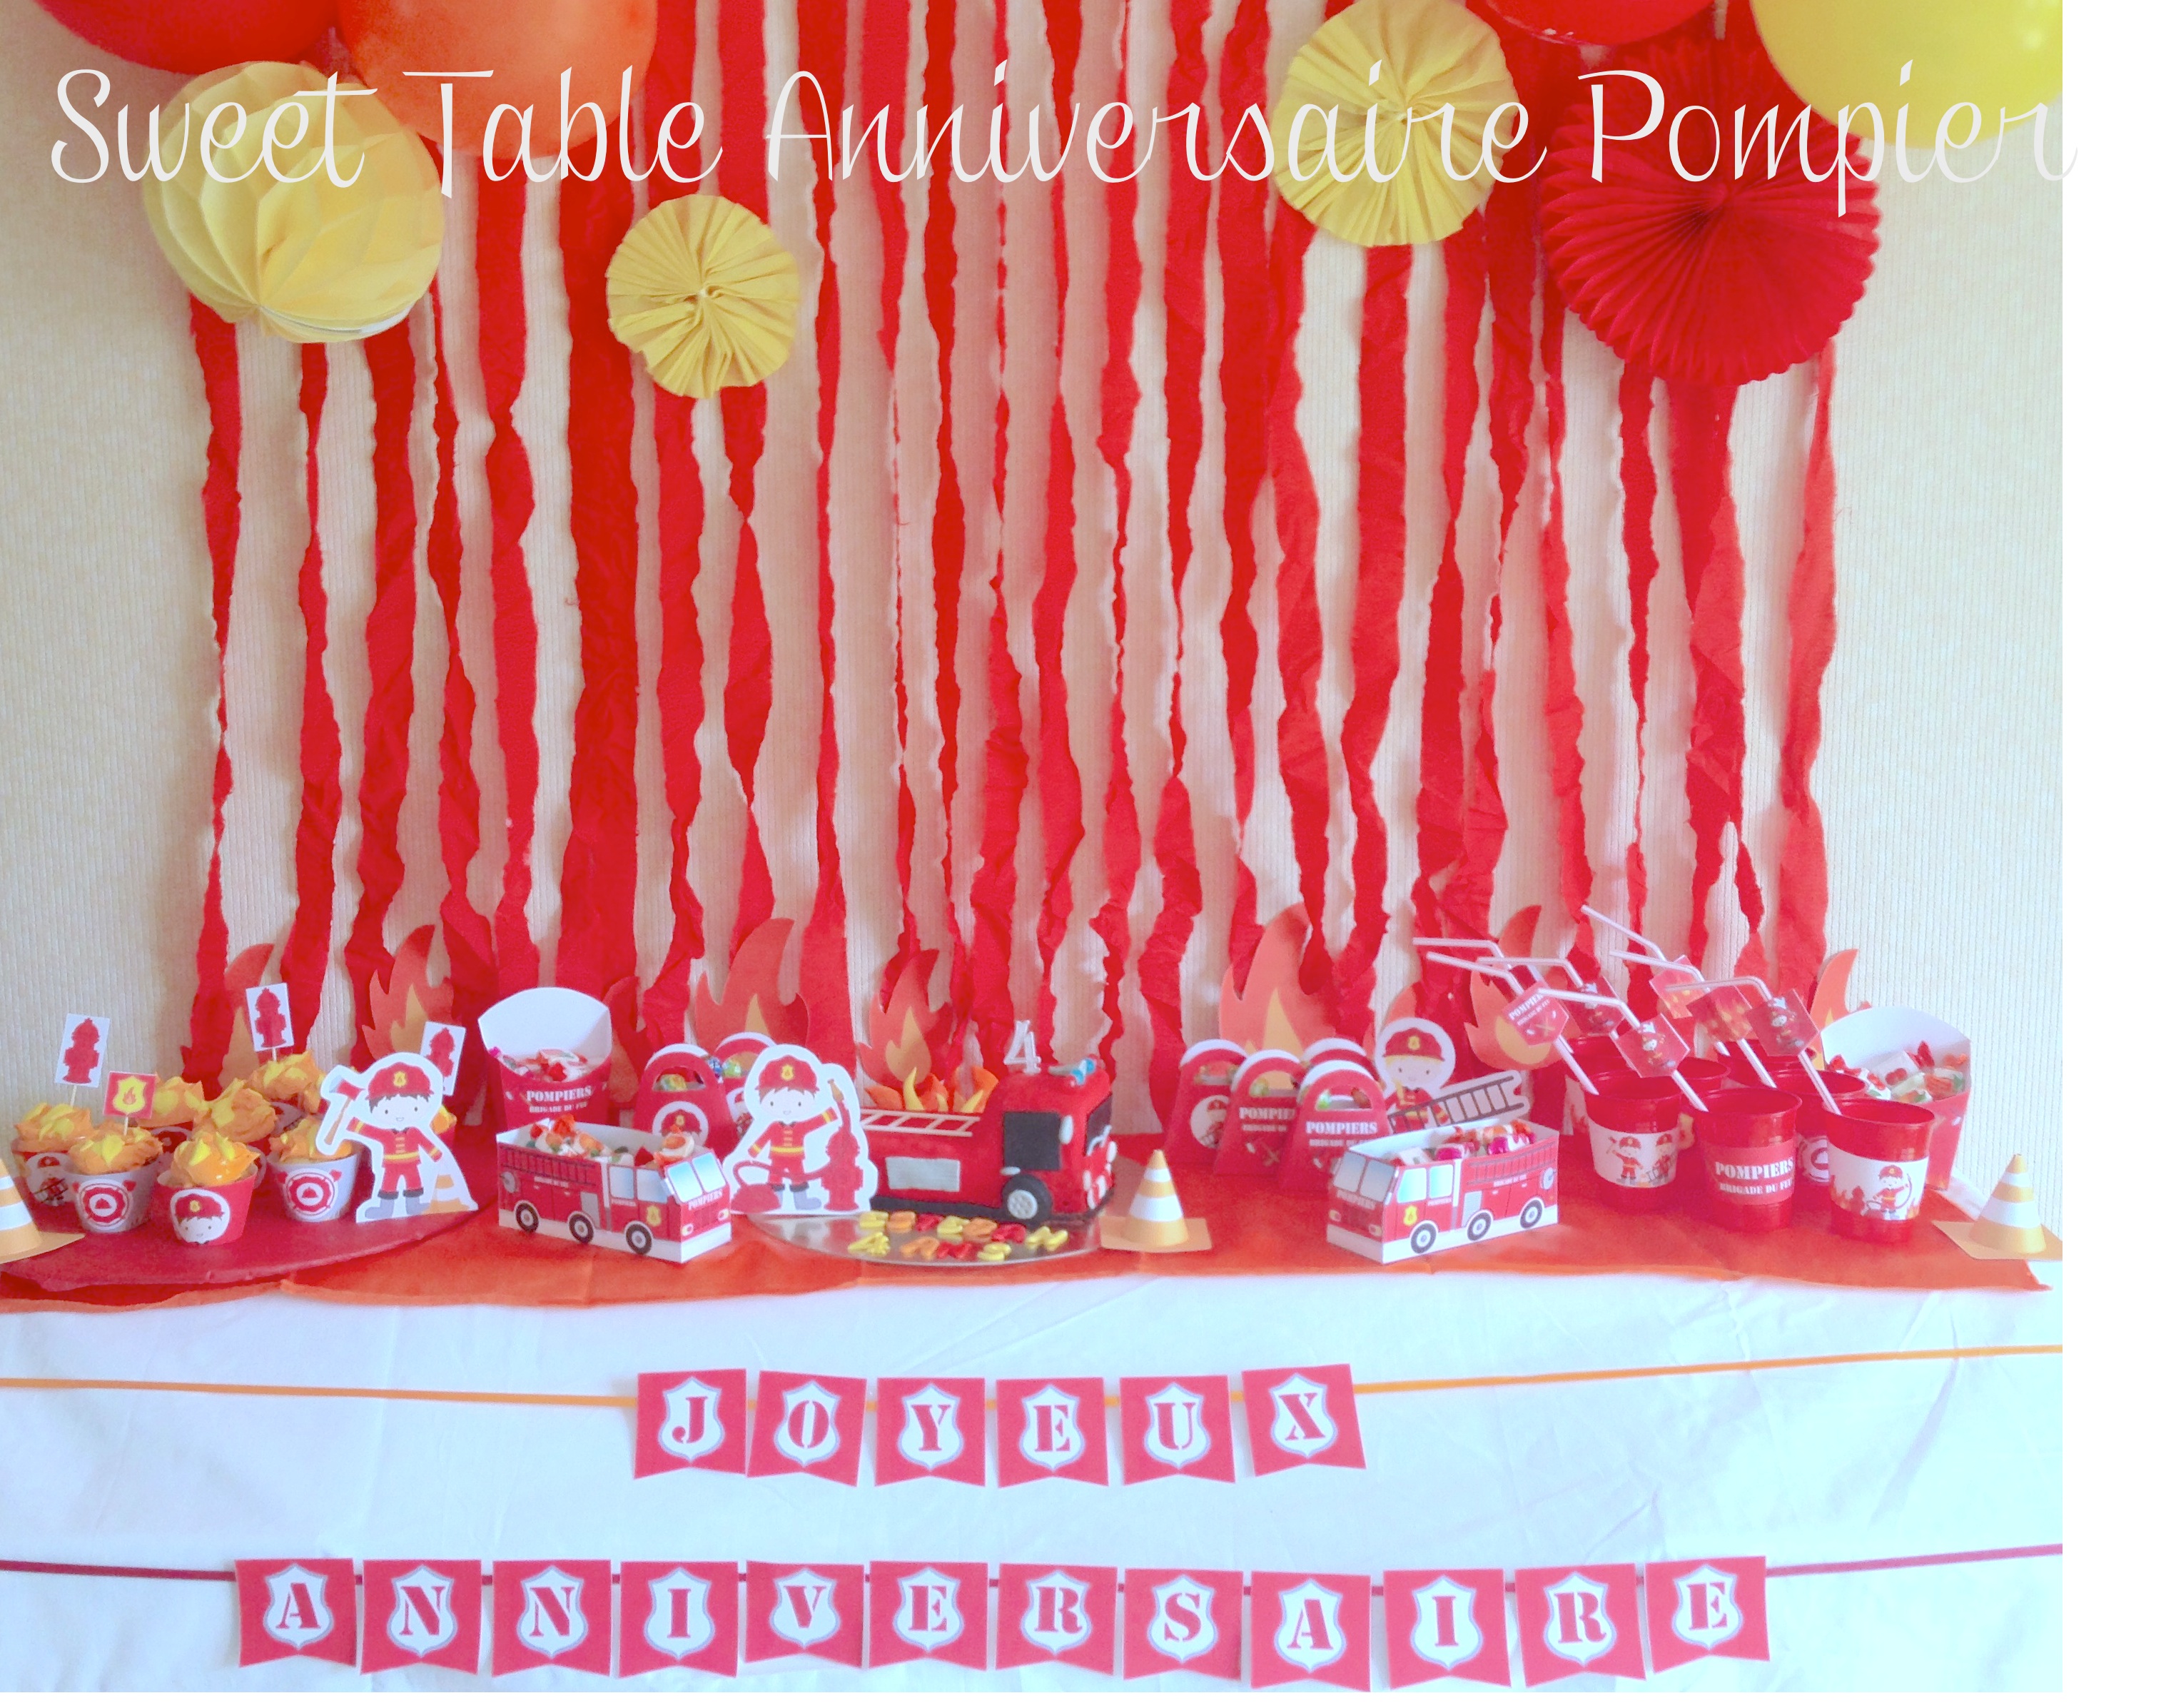 sweet table anniversaire pompier